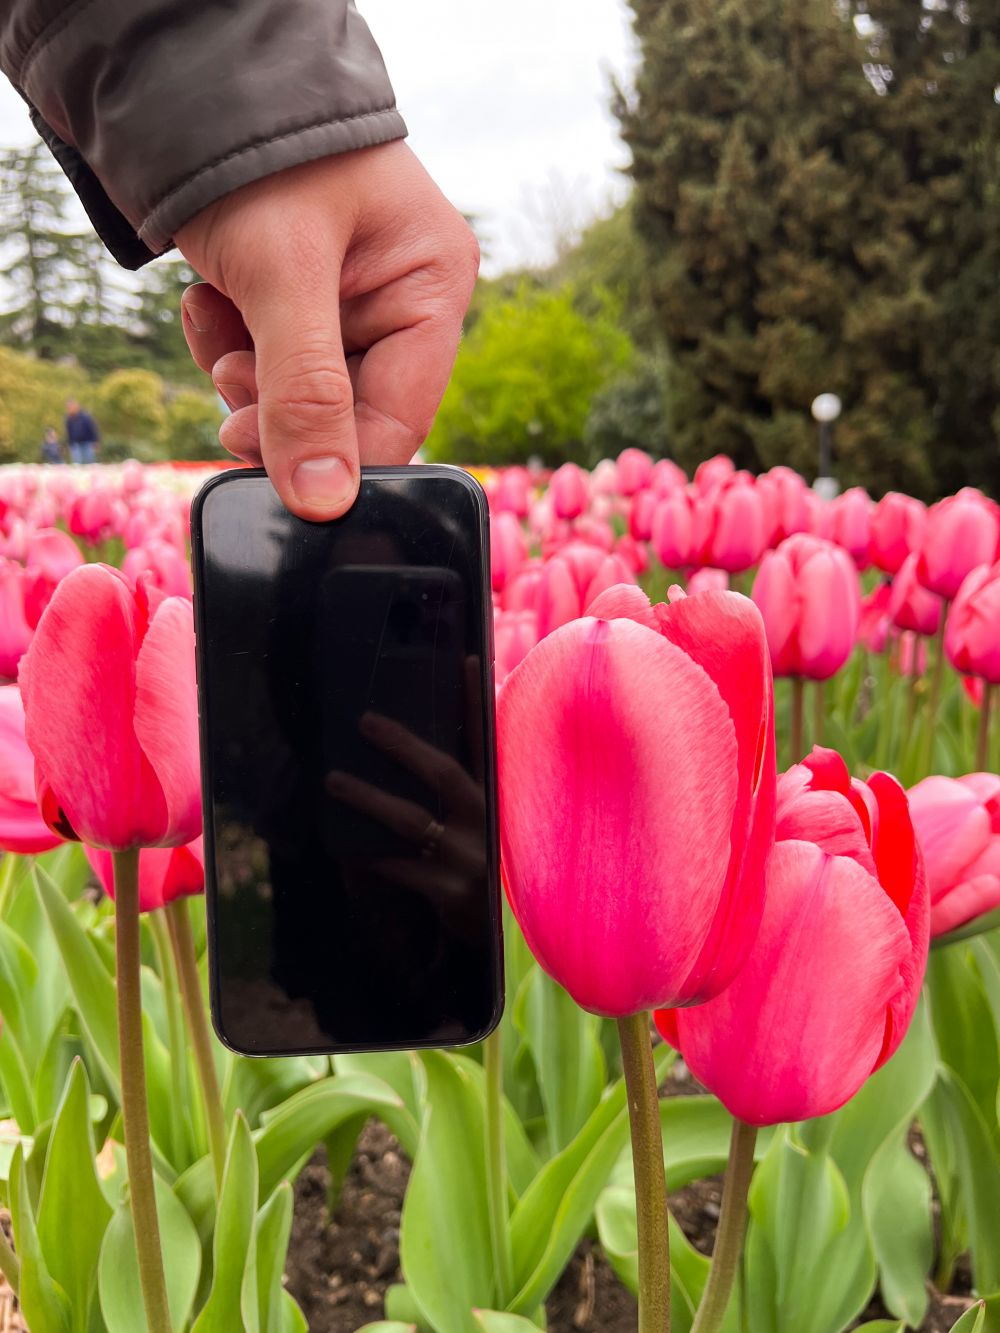 Тут встречаются тюльпаны размером почти с телефон.